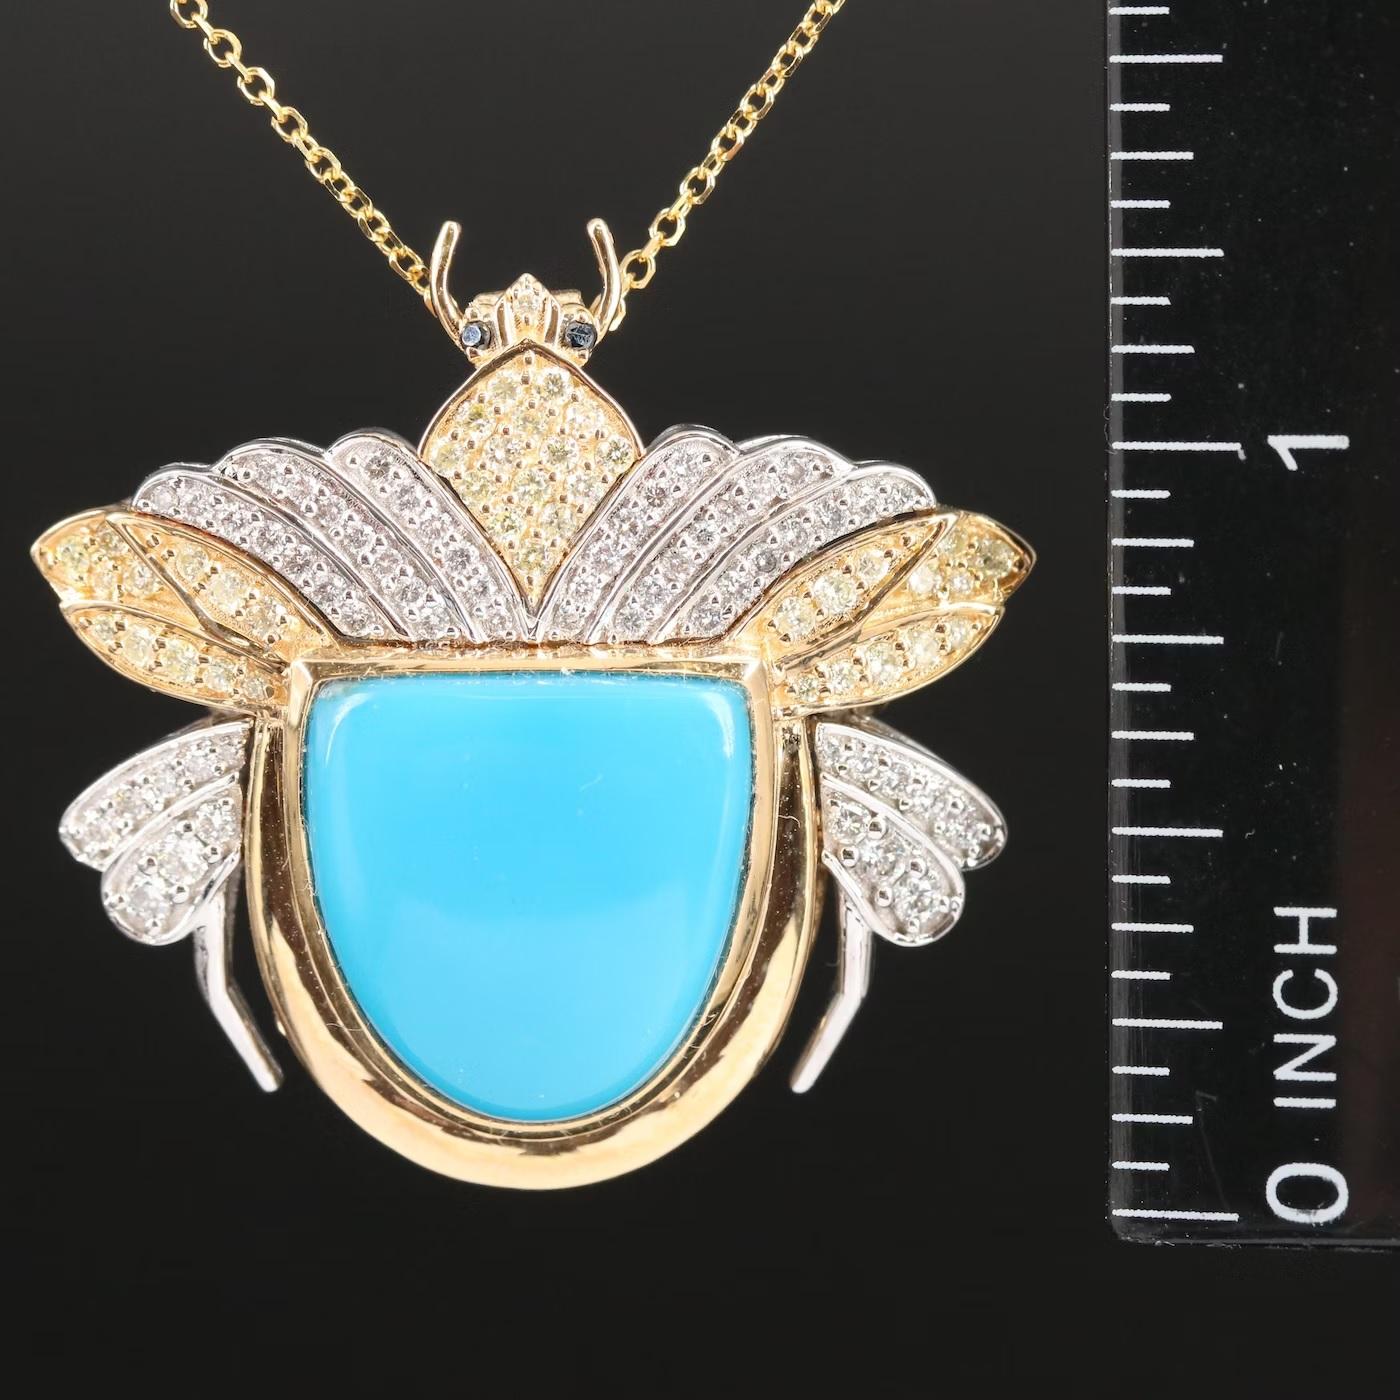 Designer Chromia Converter Halskette Brosche (gestempelt mit den Designer Hallmarls)

Dies ist ein Einzelstück, maßgeschneidert 

3D-Käferform, ein erstaunlicher Blickfang 

Kann als Halskette (mit einem Verbindungsteil für die Kette des